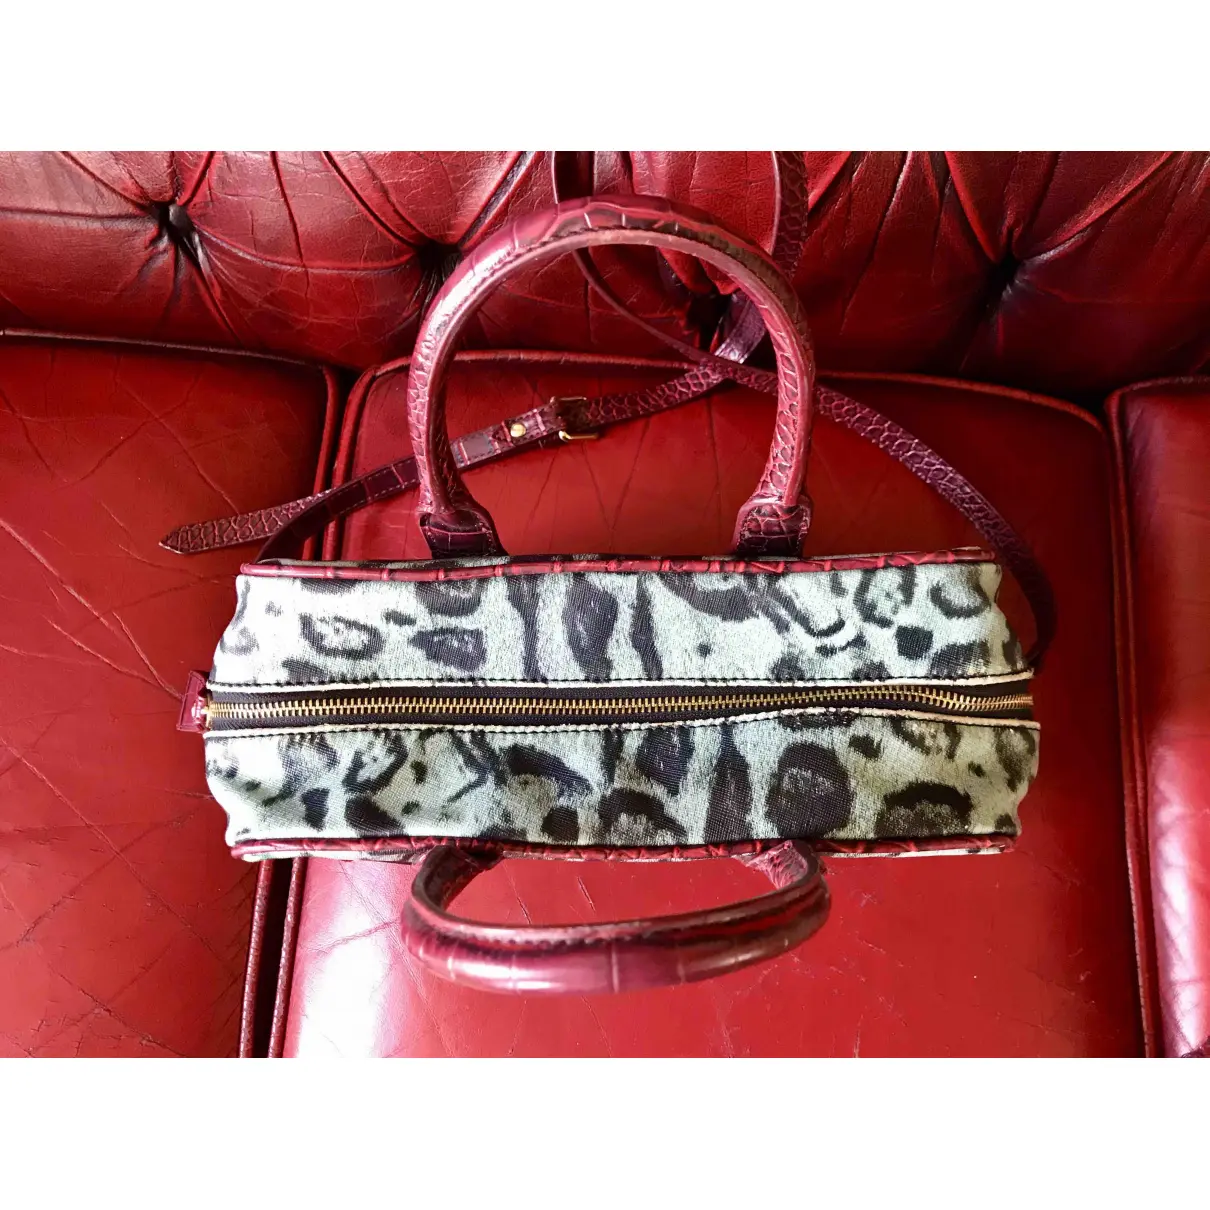 Buy Vivienne Westwood Vegan leather handbag online